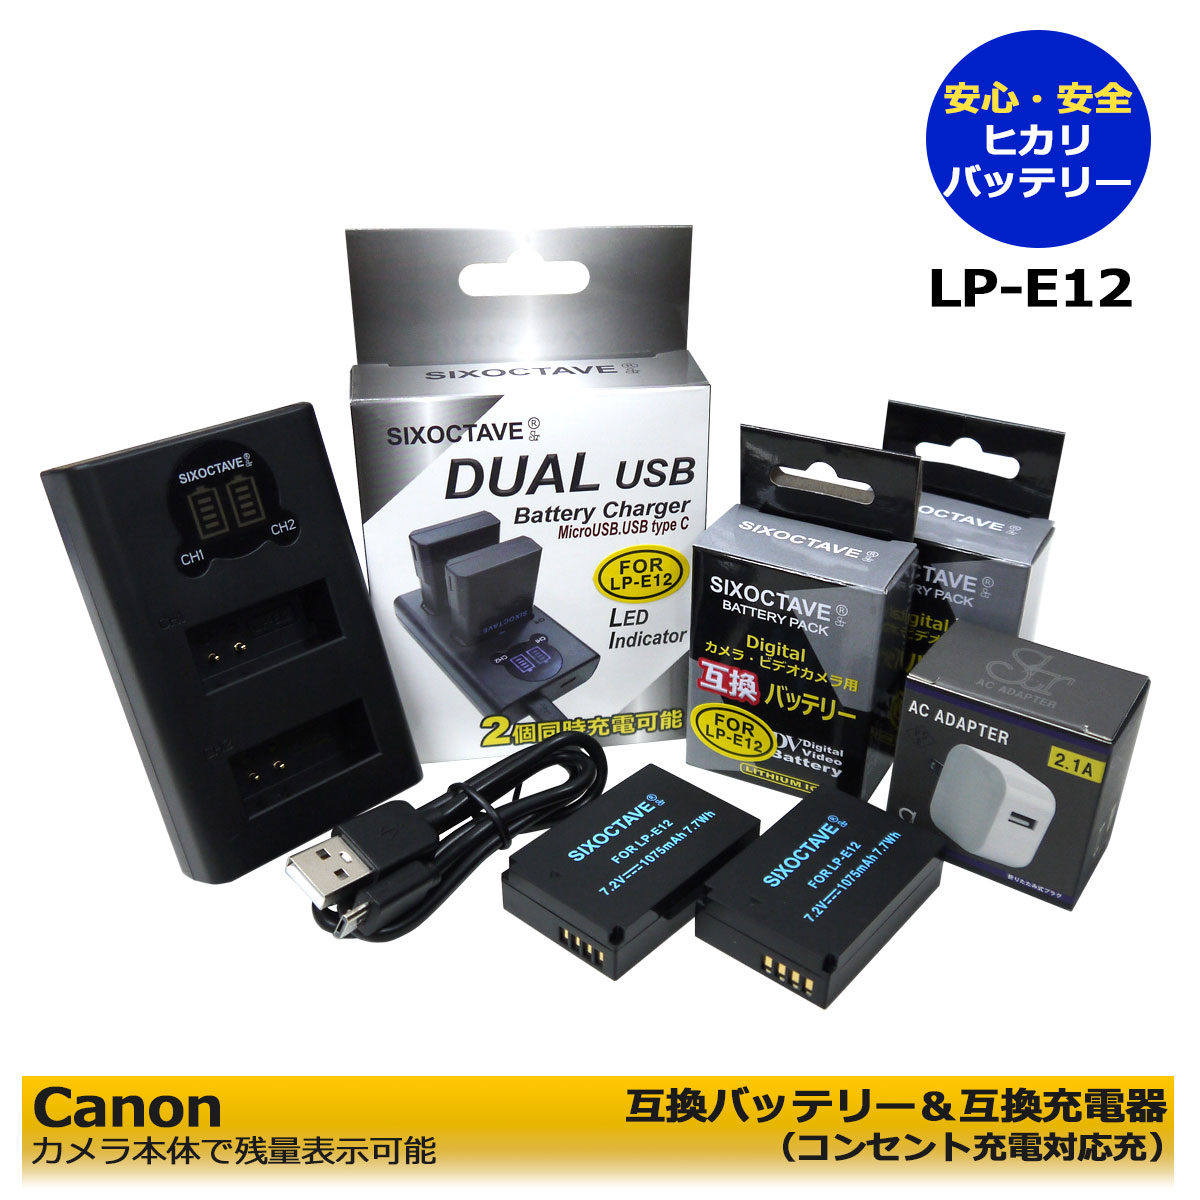 Canon バッテリーチャージャー LC-E12 - ETC、探知機、ドライブレコーダー